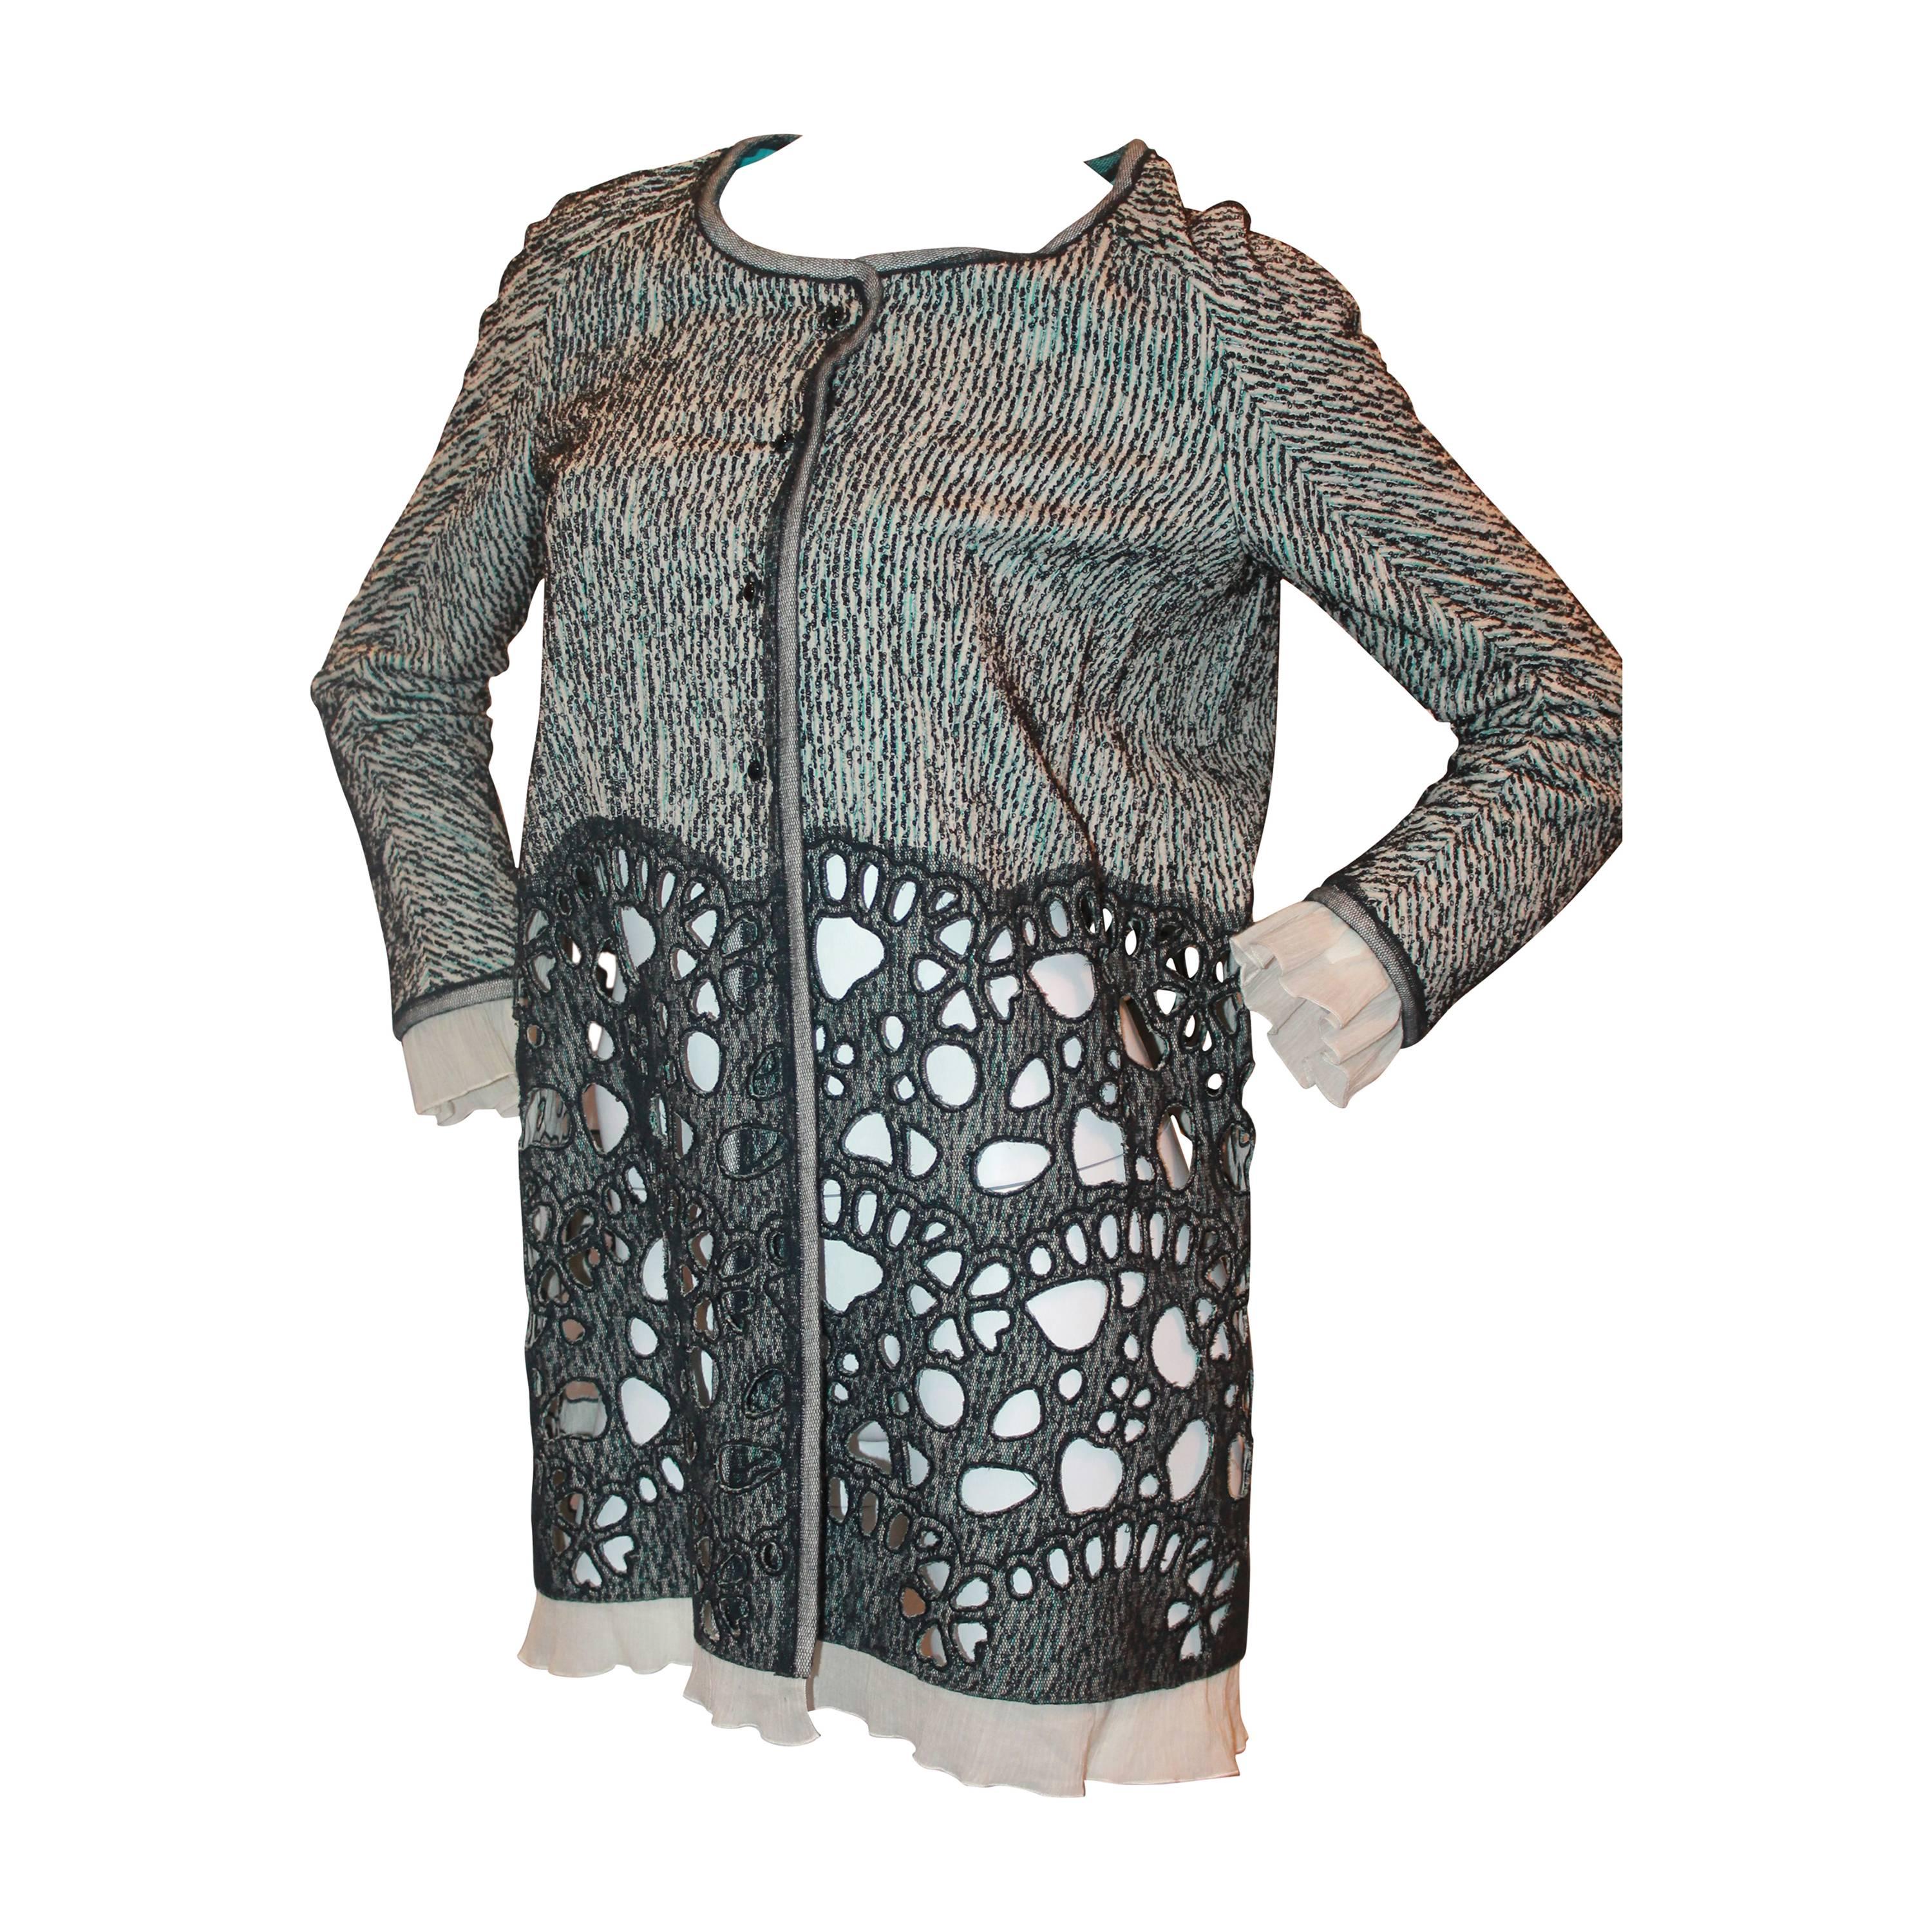 Rochas Black & White Long Jacket w/ Aqua Stitching & Lace Cutout Bottom - 6